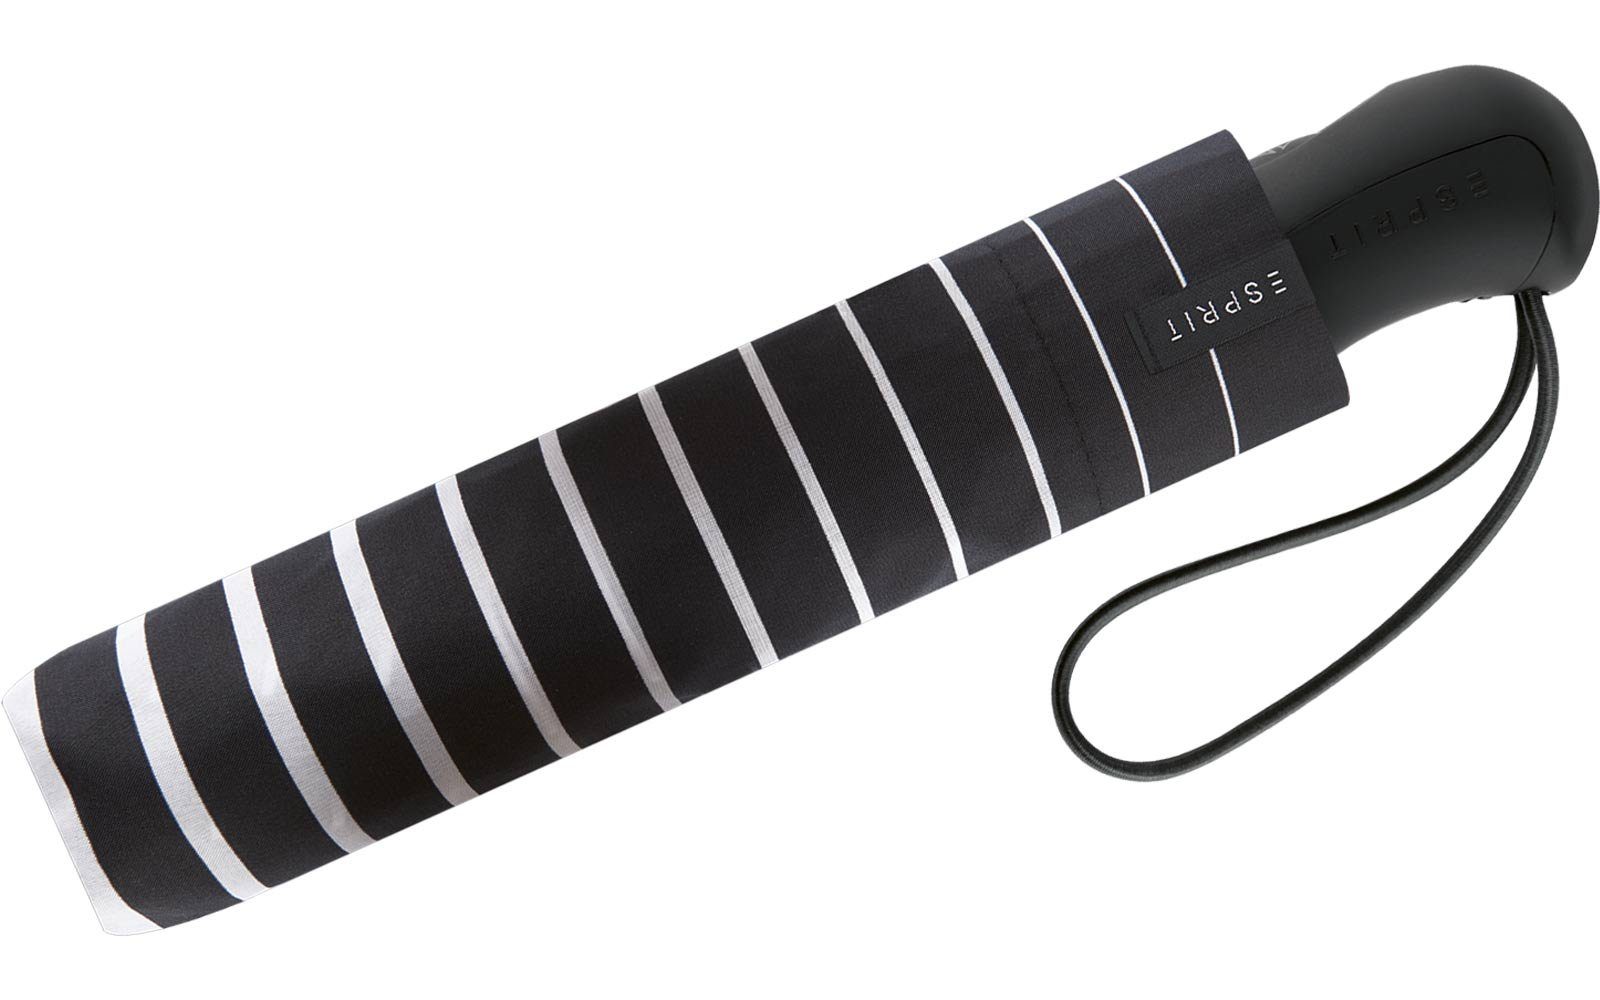 Auf-Zu schwarz-weiß Degradee Easymatic praktisch, Esprit - Stripe black, Taschenregenschirm stabil, in Light Automatik moderner Streifen-Optik